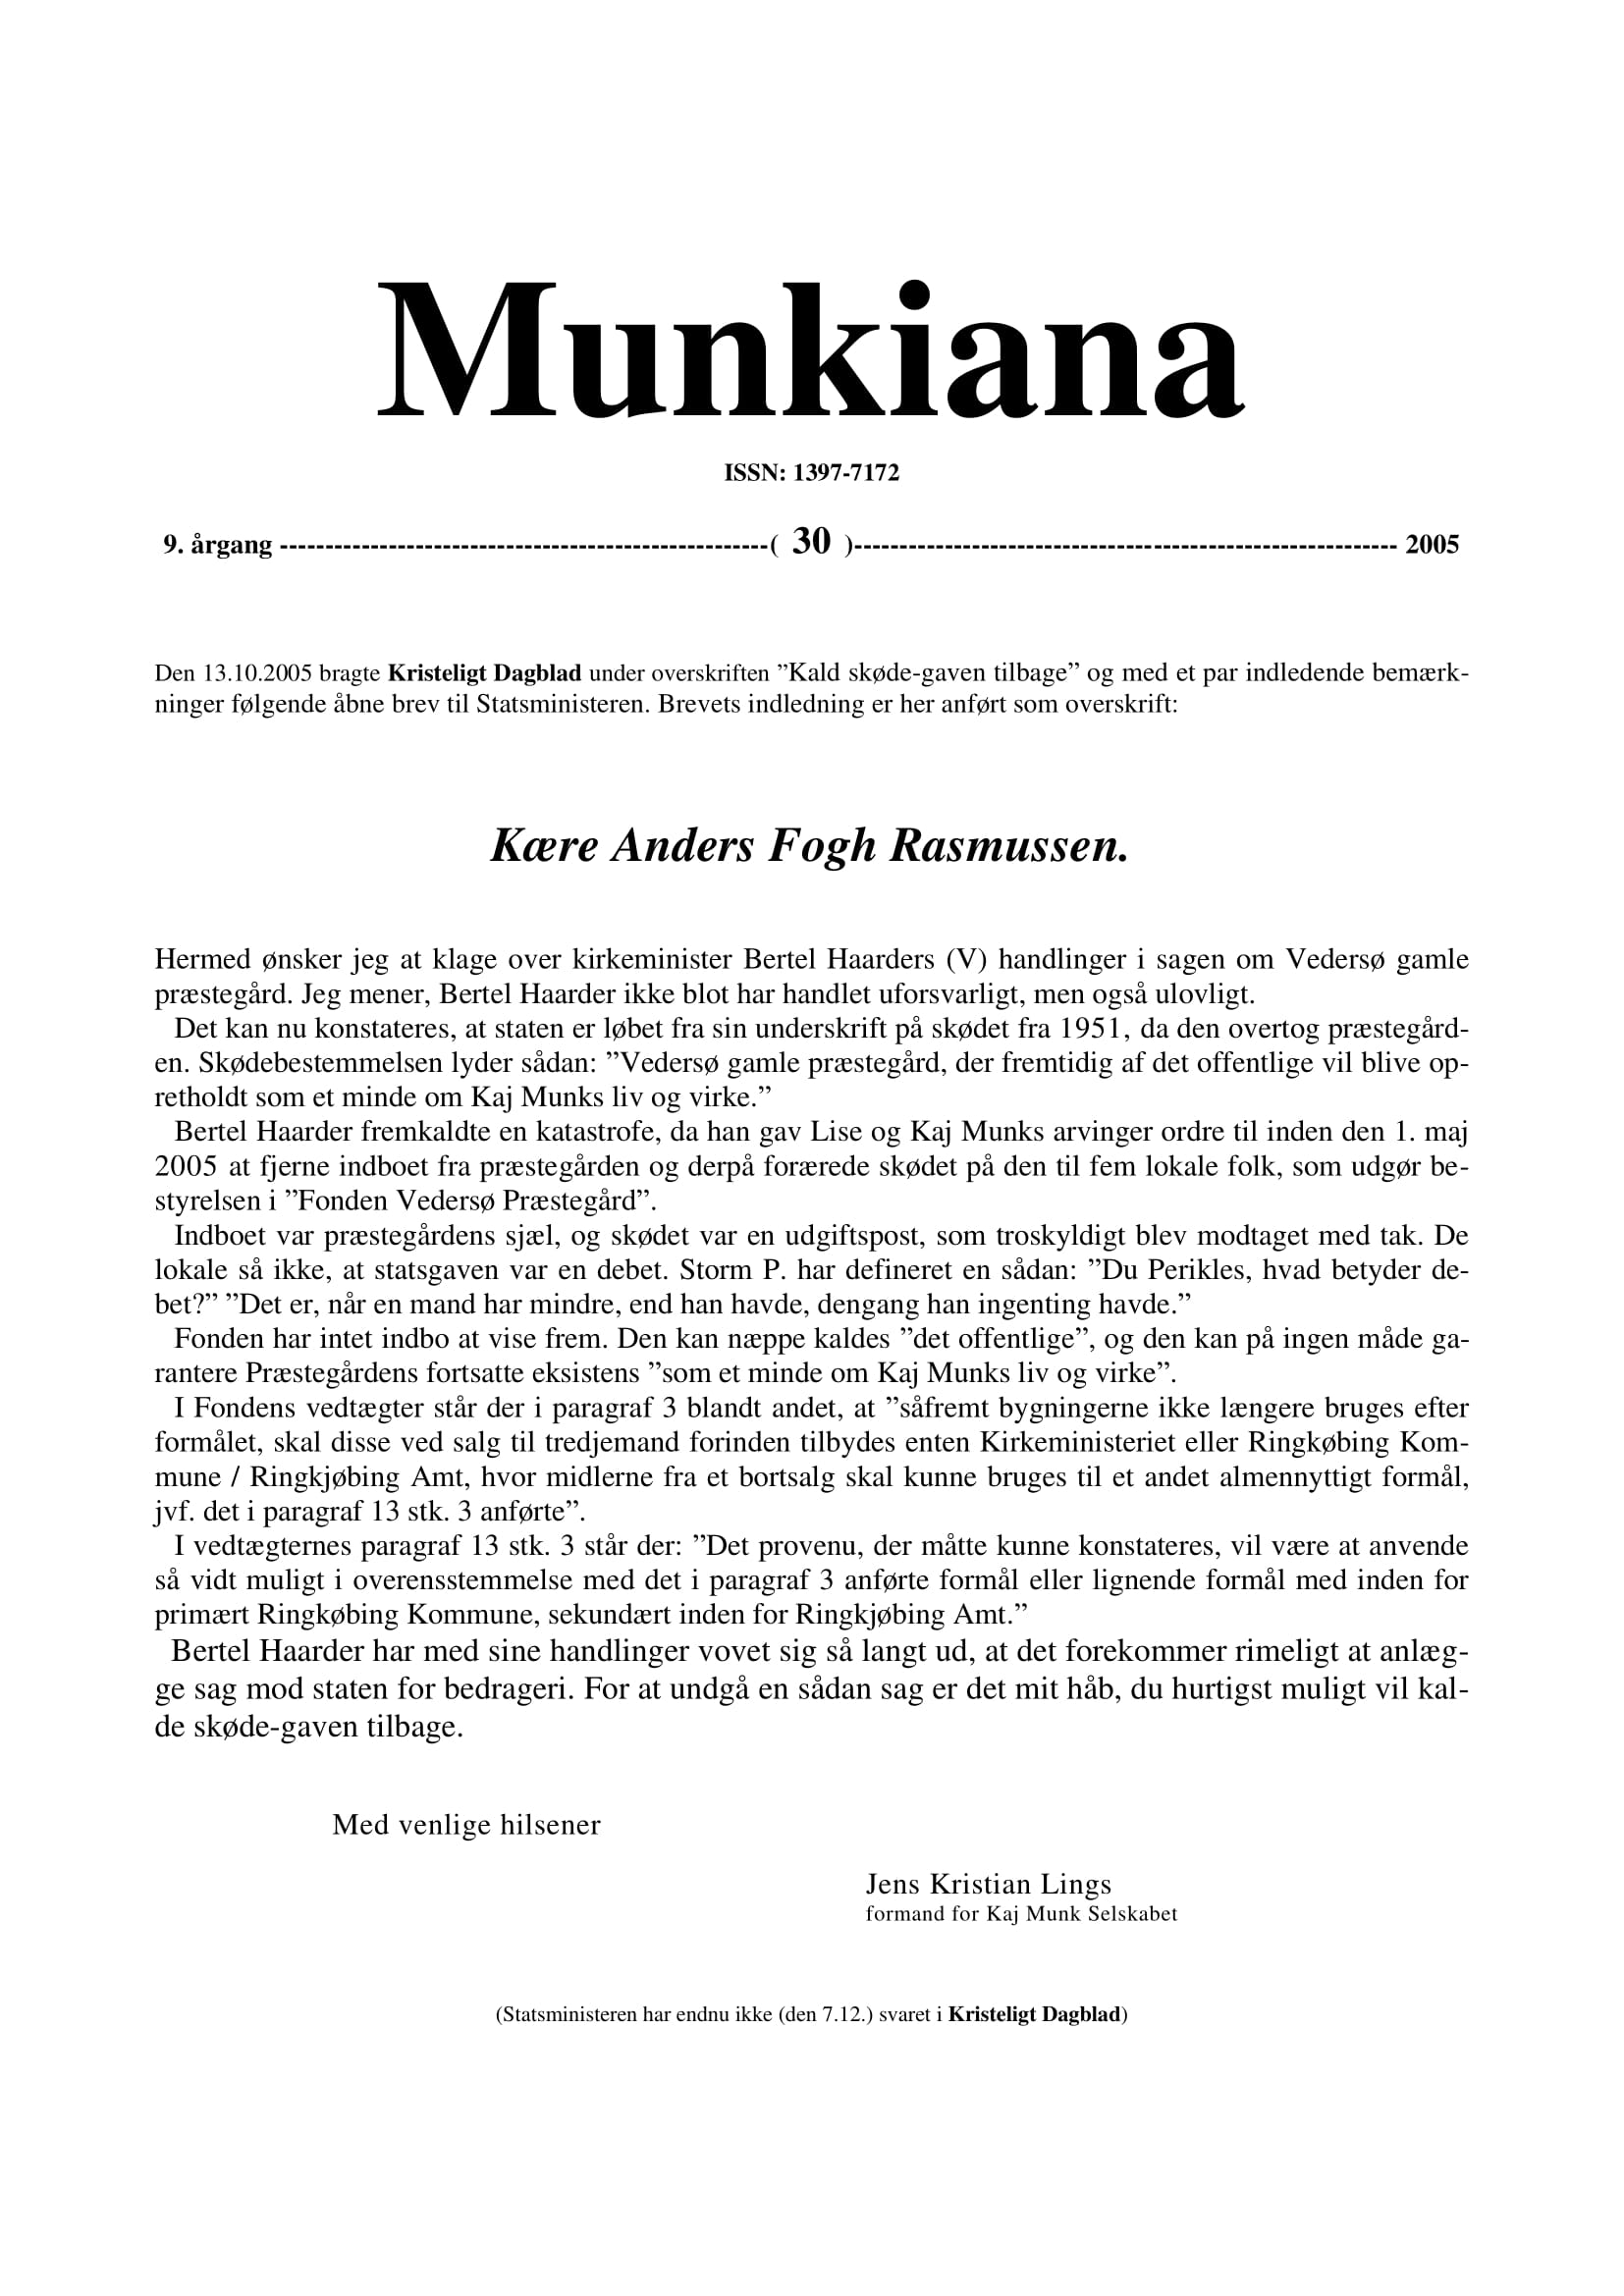 Klik på billedet for at downloade PDF med Munkiana nr. 36